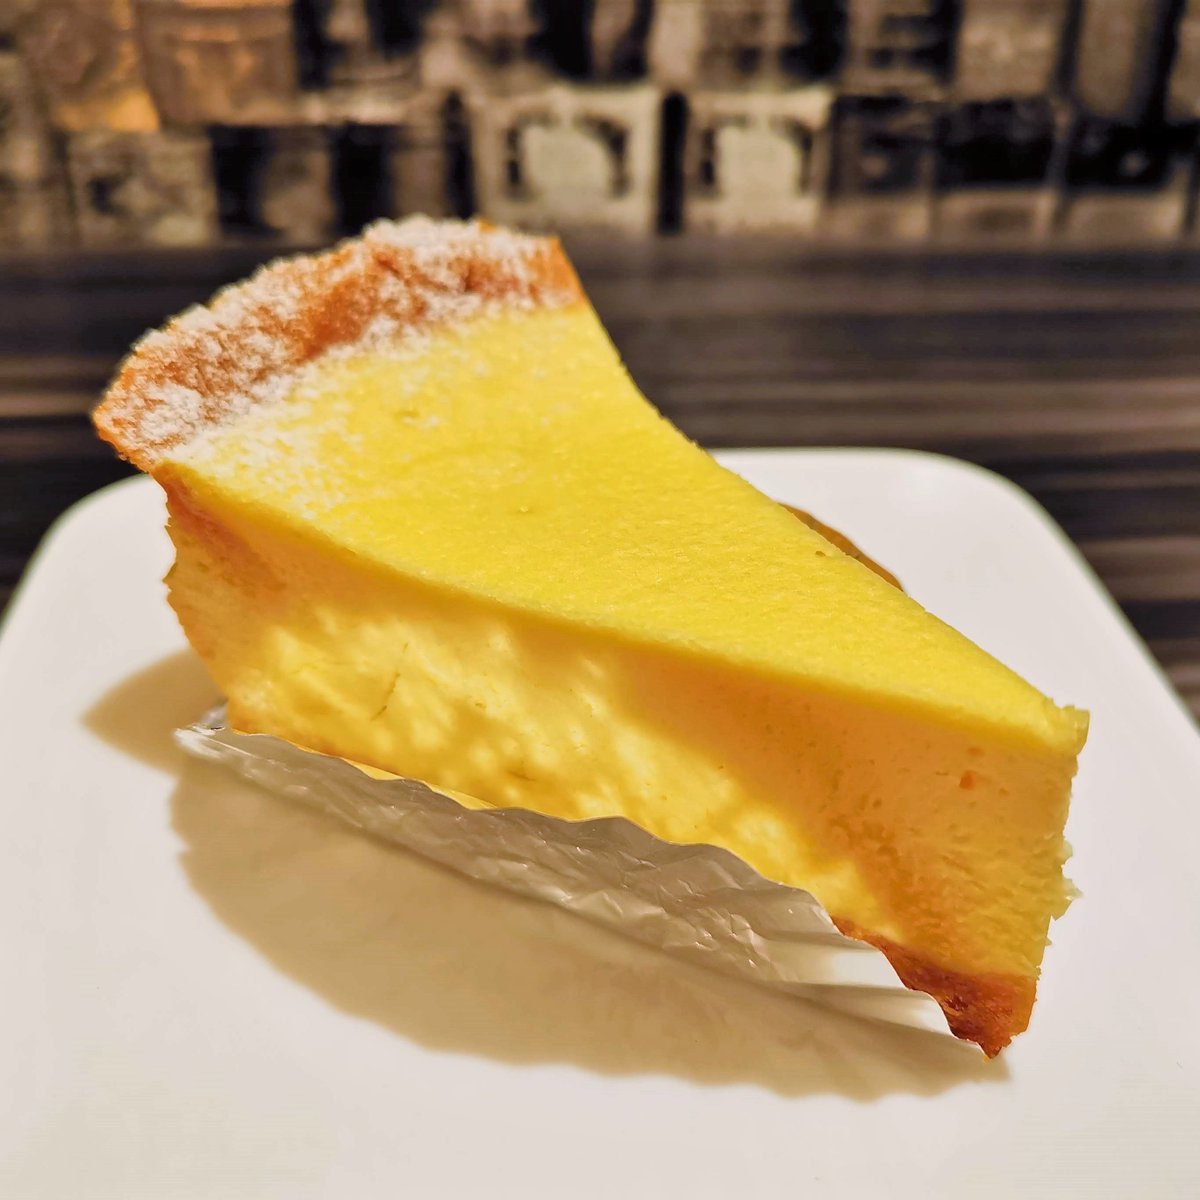 かなざわ チーズケーキなど 新高円寺駅 東京メトロ丸の内線 から徒歩2分ほどの場所に パティスリーコポー のチーズケーキ 名前は 焼きチーズ シンプルなベイクドチーズケーキですが 濃厚で風味豊かで 素材の良さを感じられて 一口目から